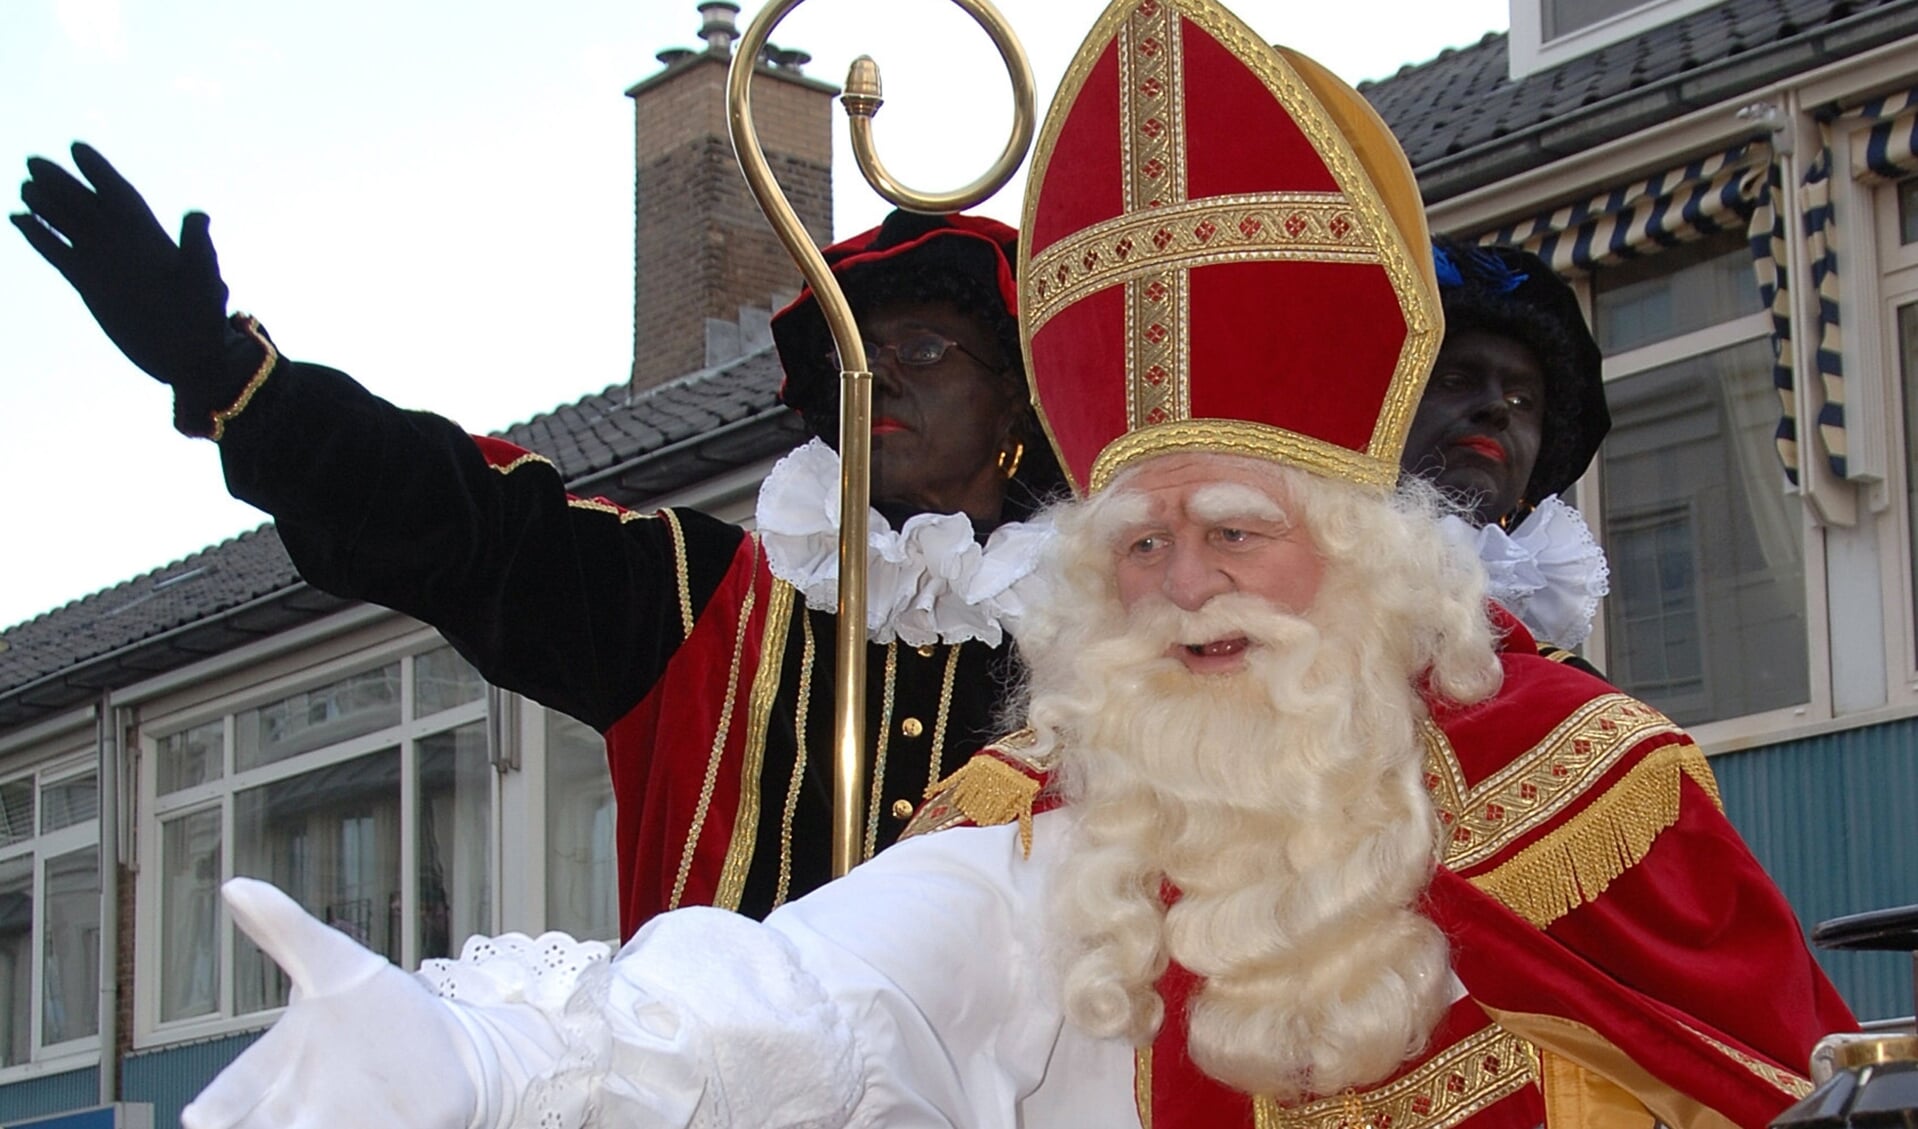 De gemeenteraad wil een dialoog houden over het Sinterklaasfeest en de rol van zwarte piet